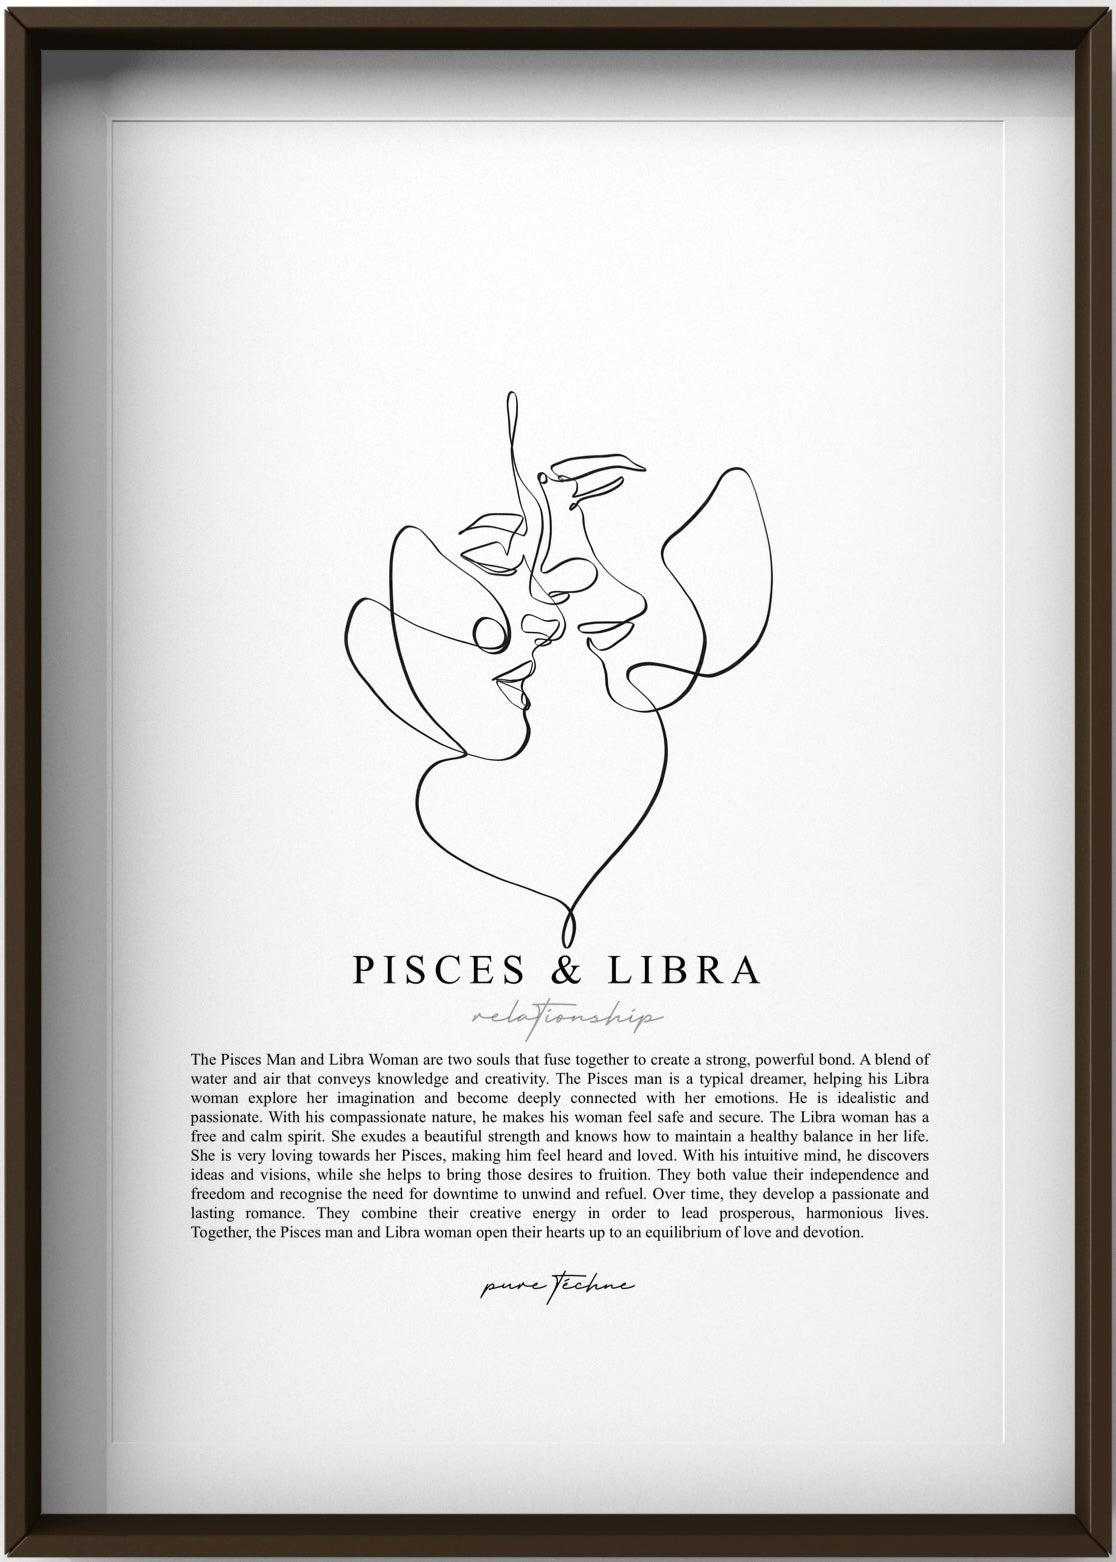 Pisces Man & Libra Woman